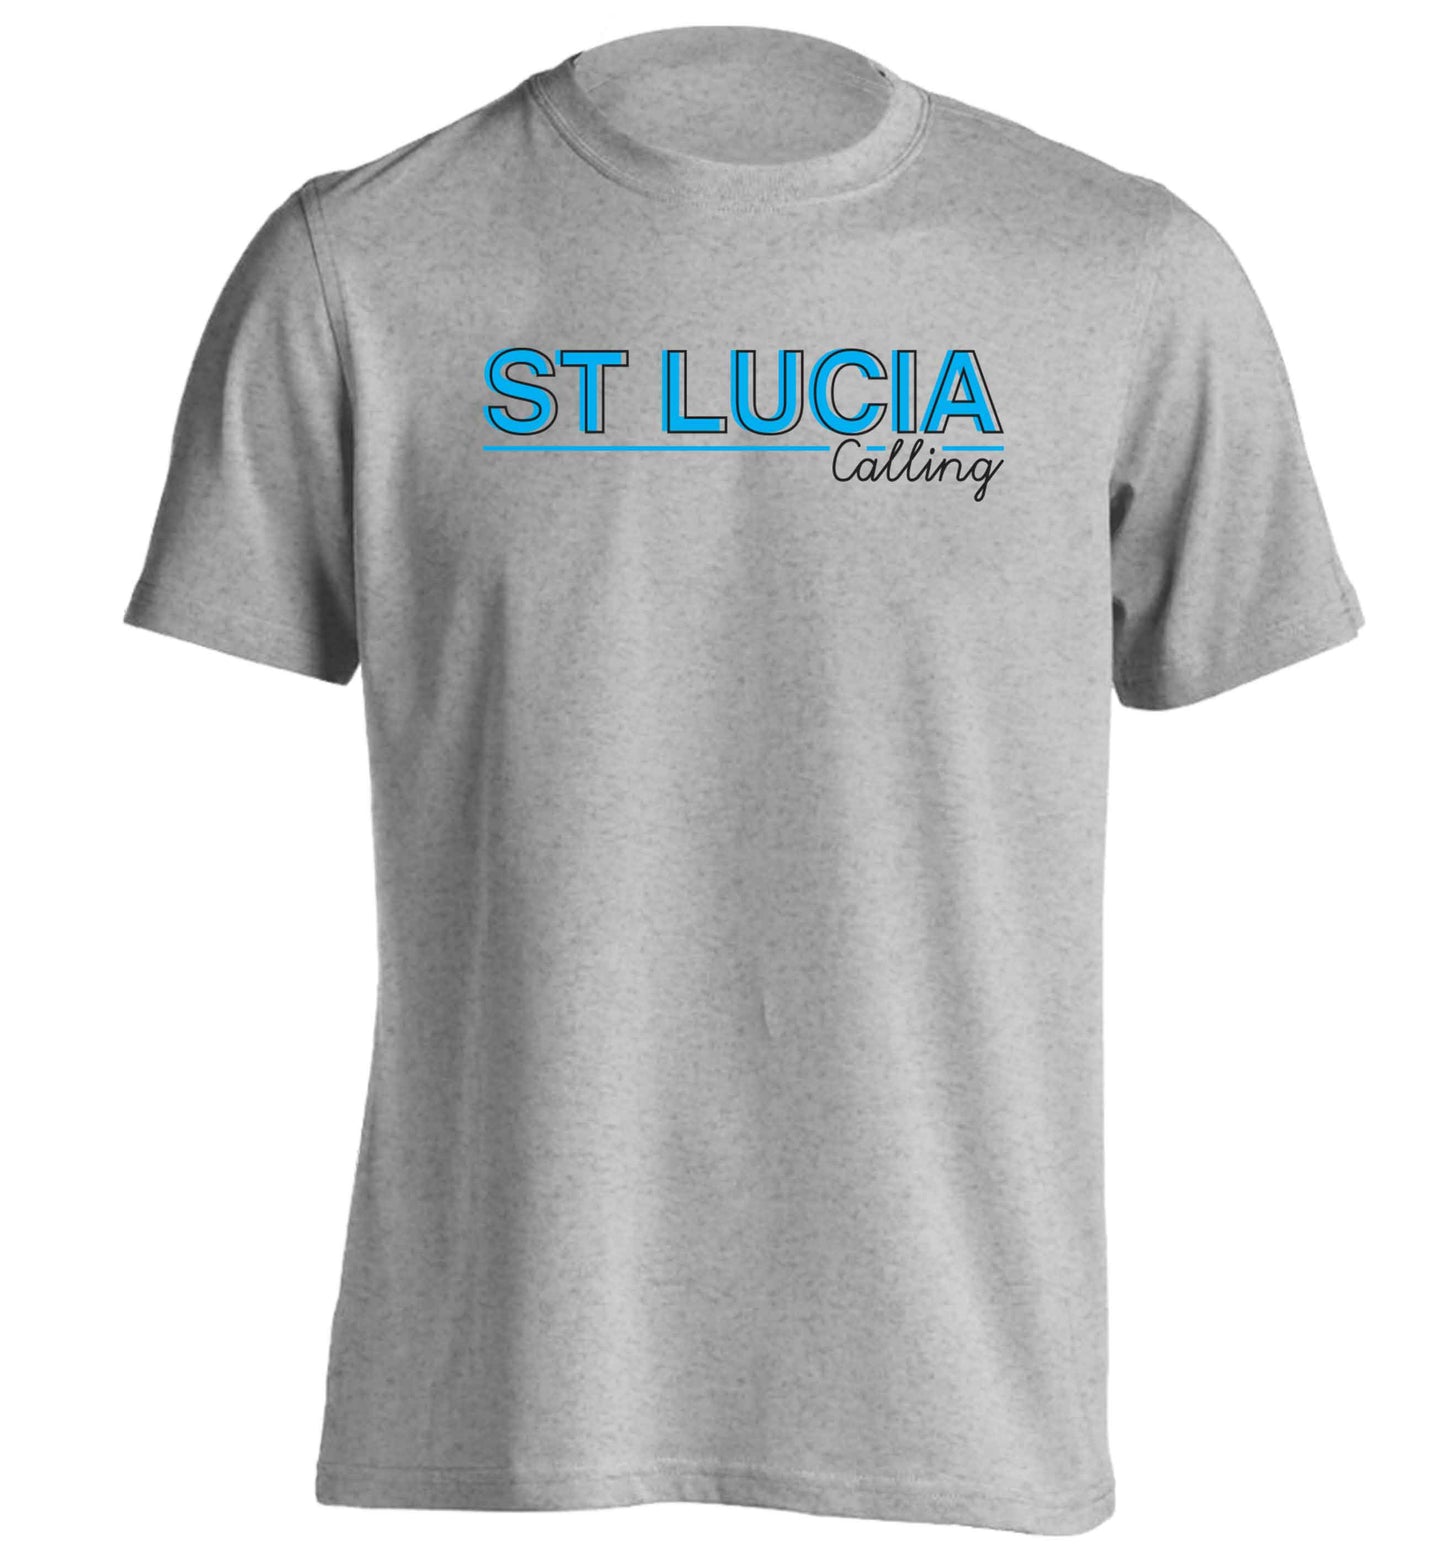 St Lucia calling adults unisex grey Tshirt 2XL